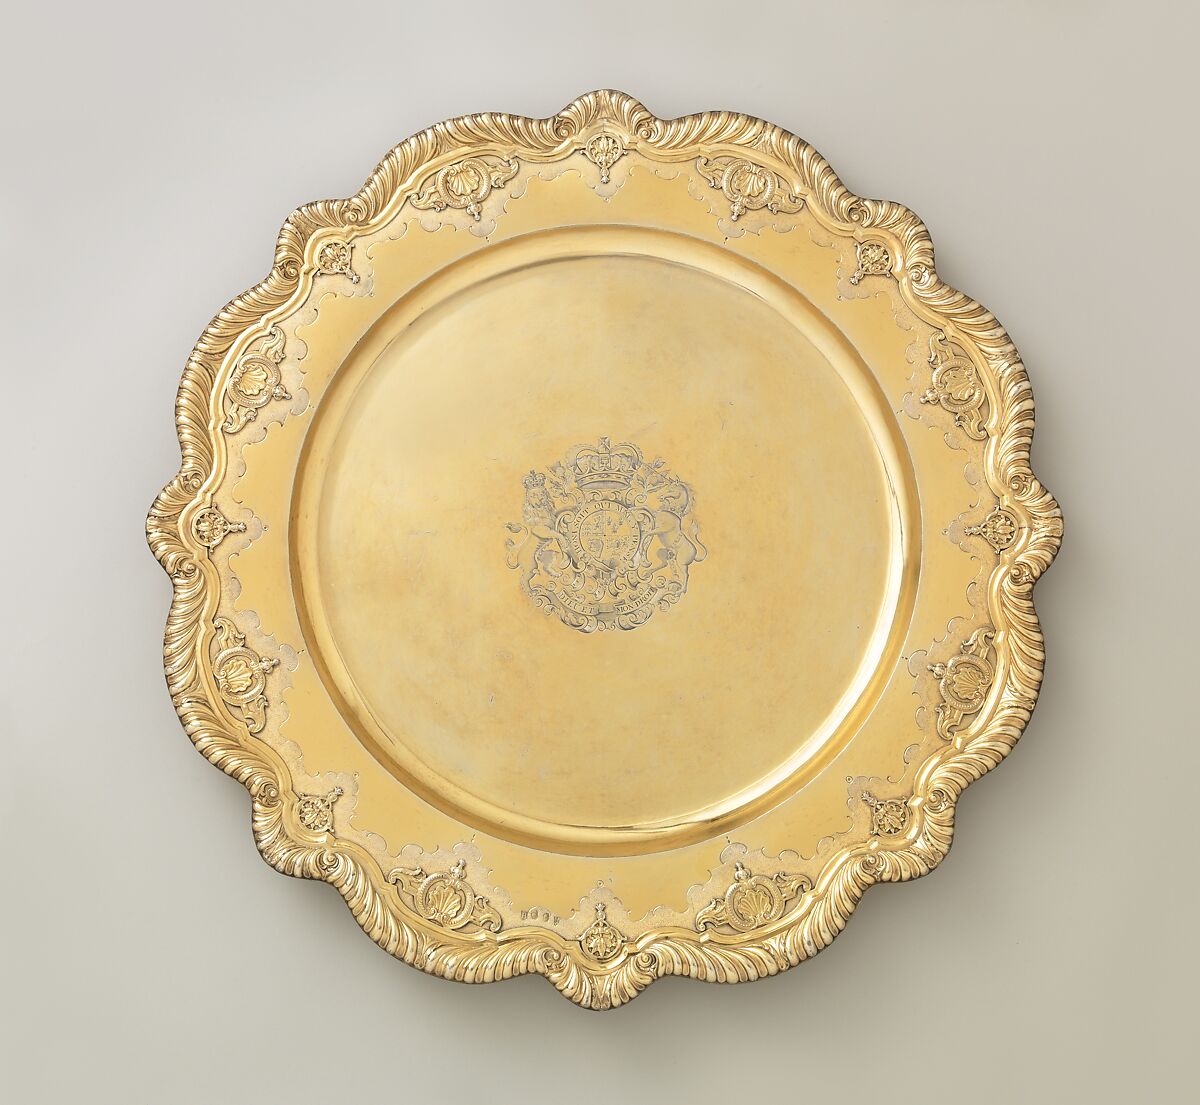 Sideboard dish, Lewis Mettayer (British, active 1700–died 1740), Silver gilt, British, London 